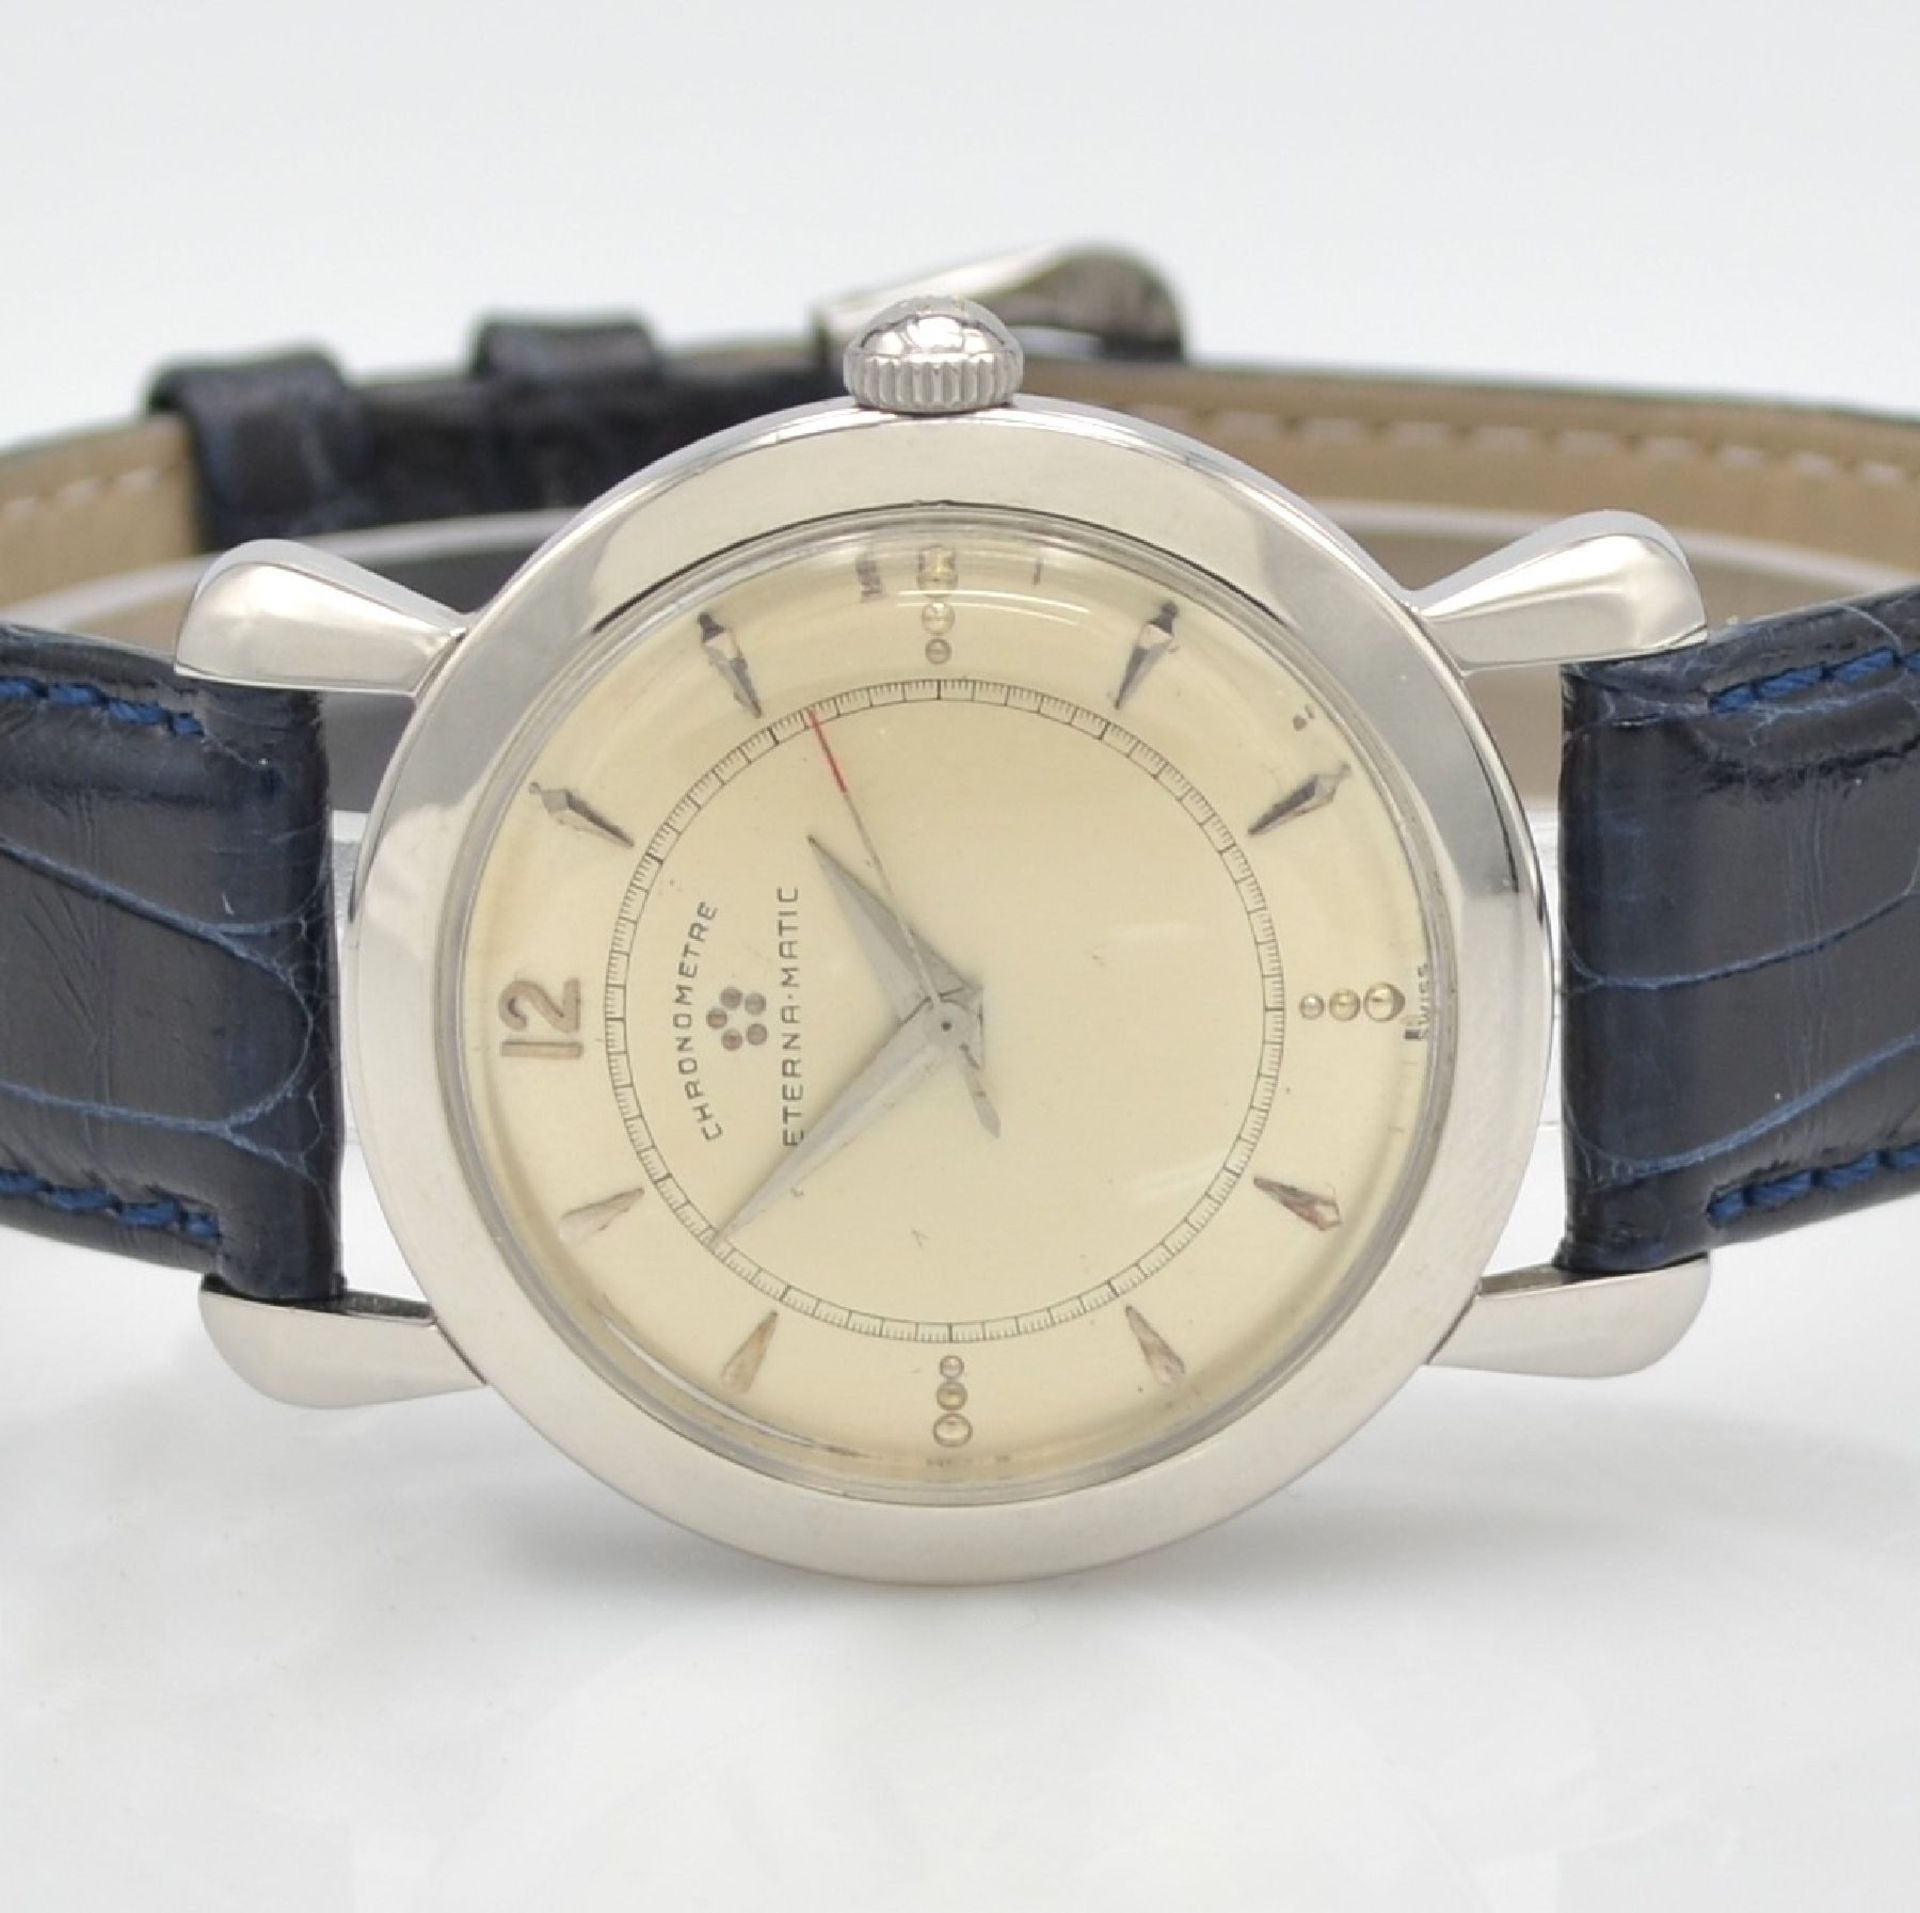 ETERNA-MATIC chronometer wristwatch in steel, Switzerland around 1954, screwed down case back with - Bild 2 aus 7